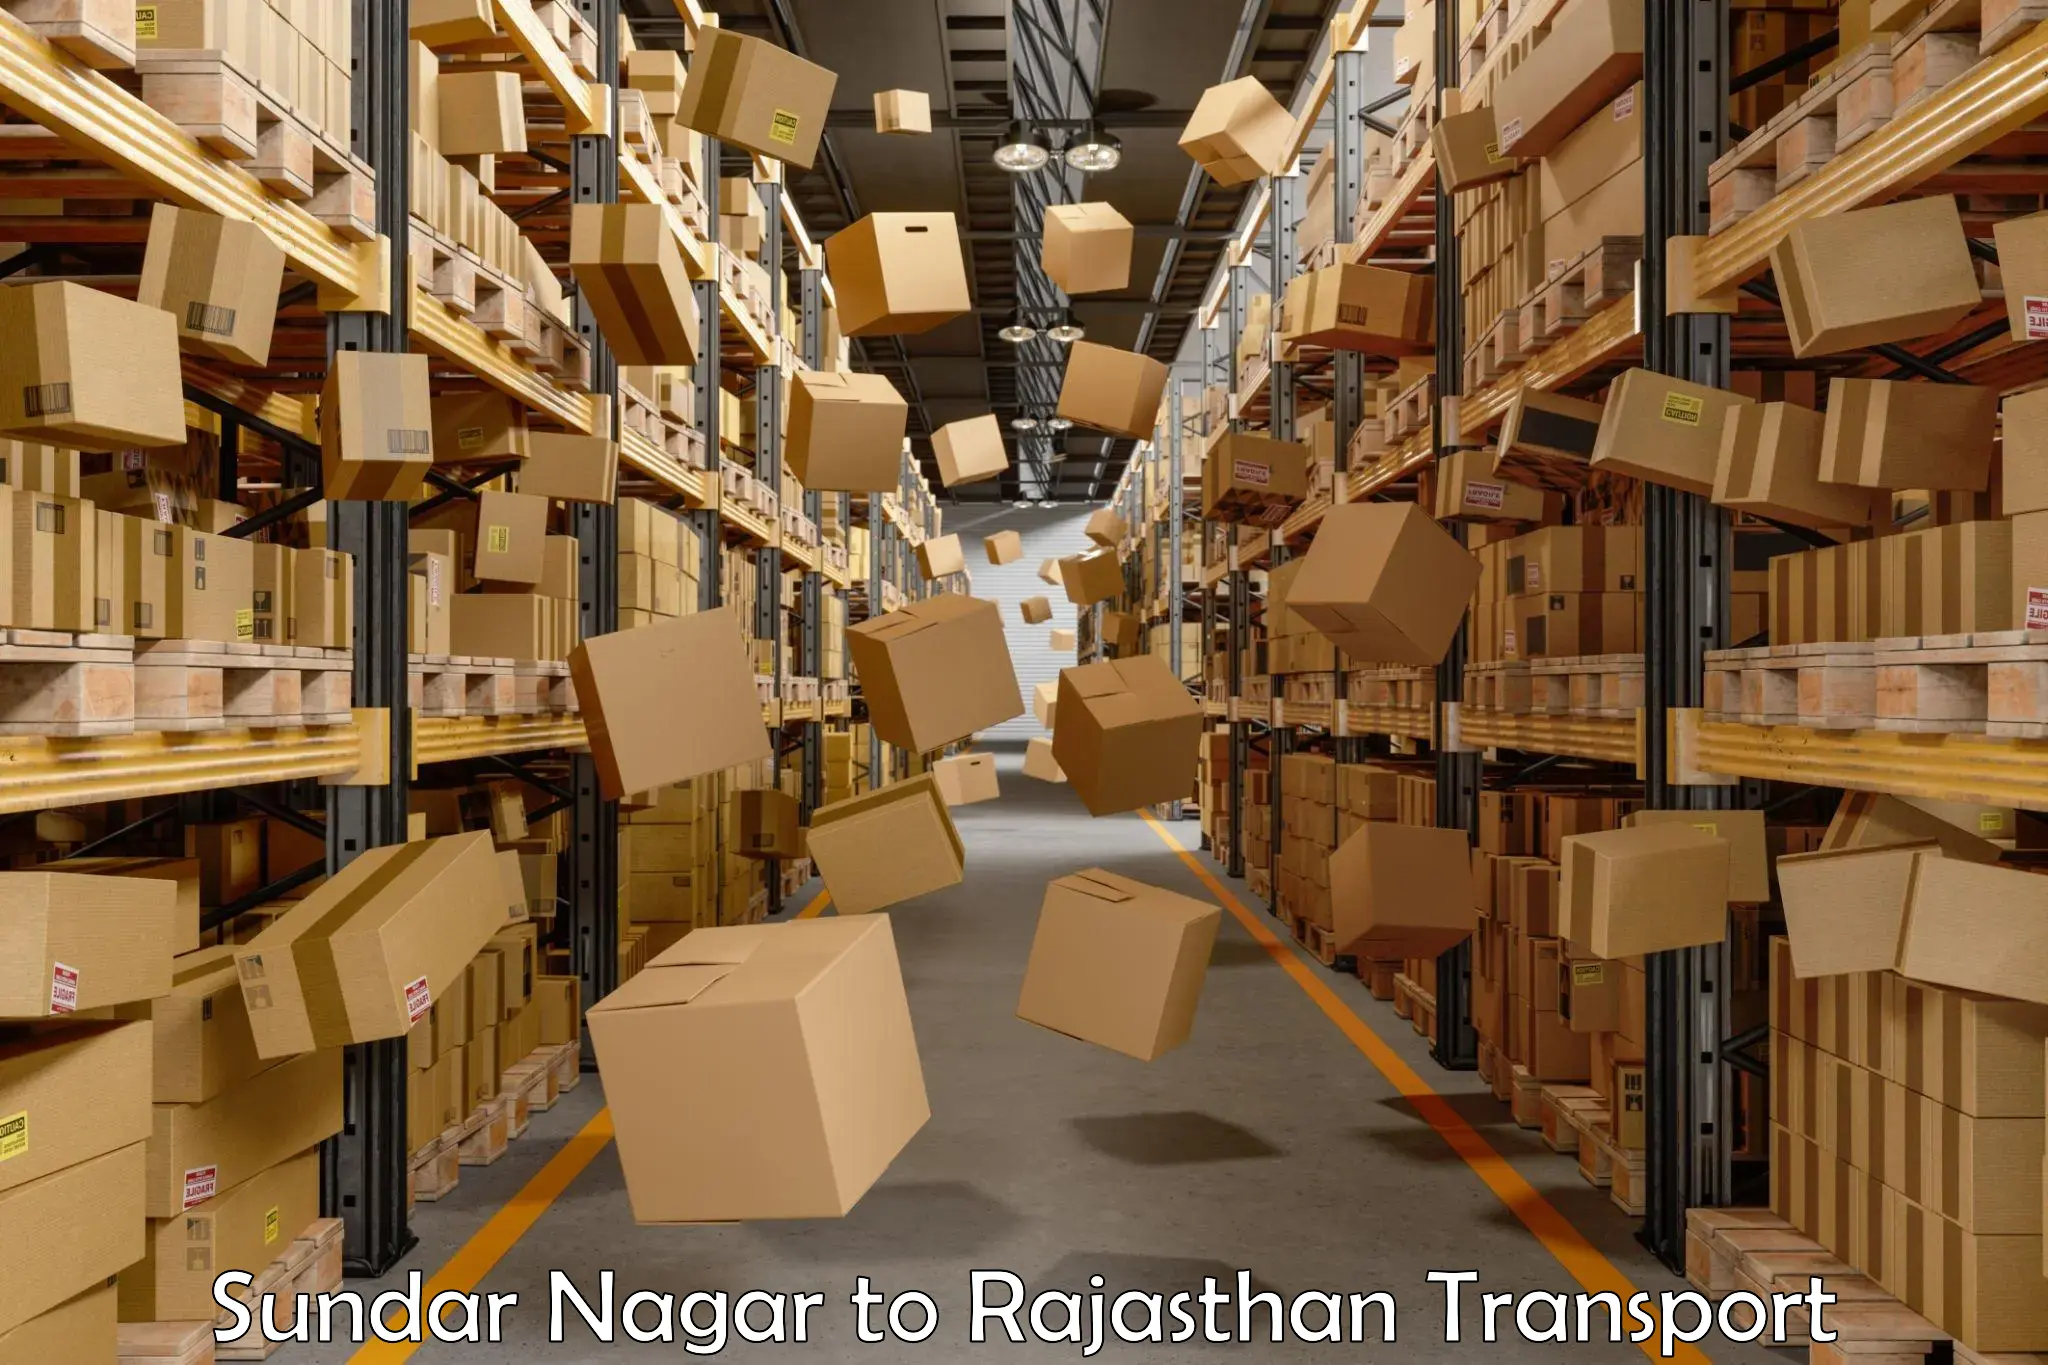 Commercial transport service Sundar Nagar to Bikaner